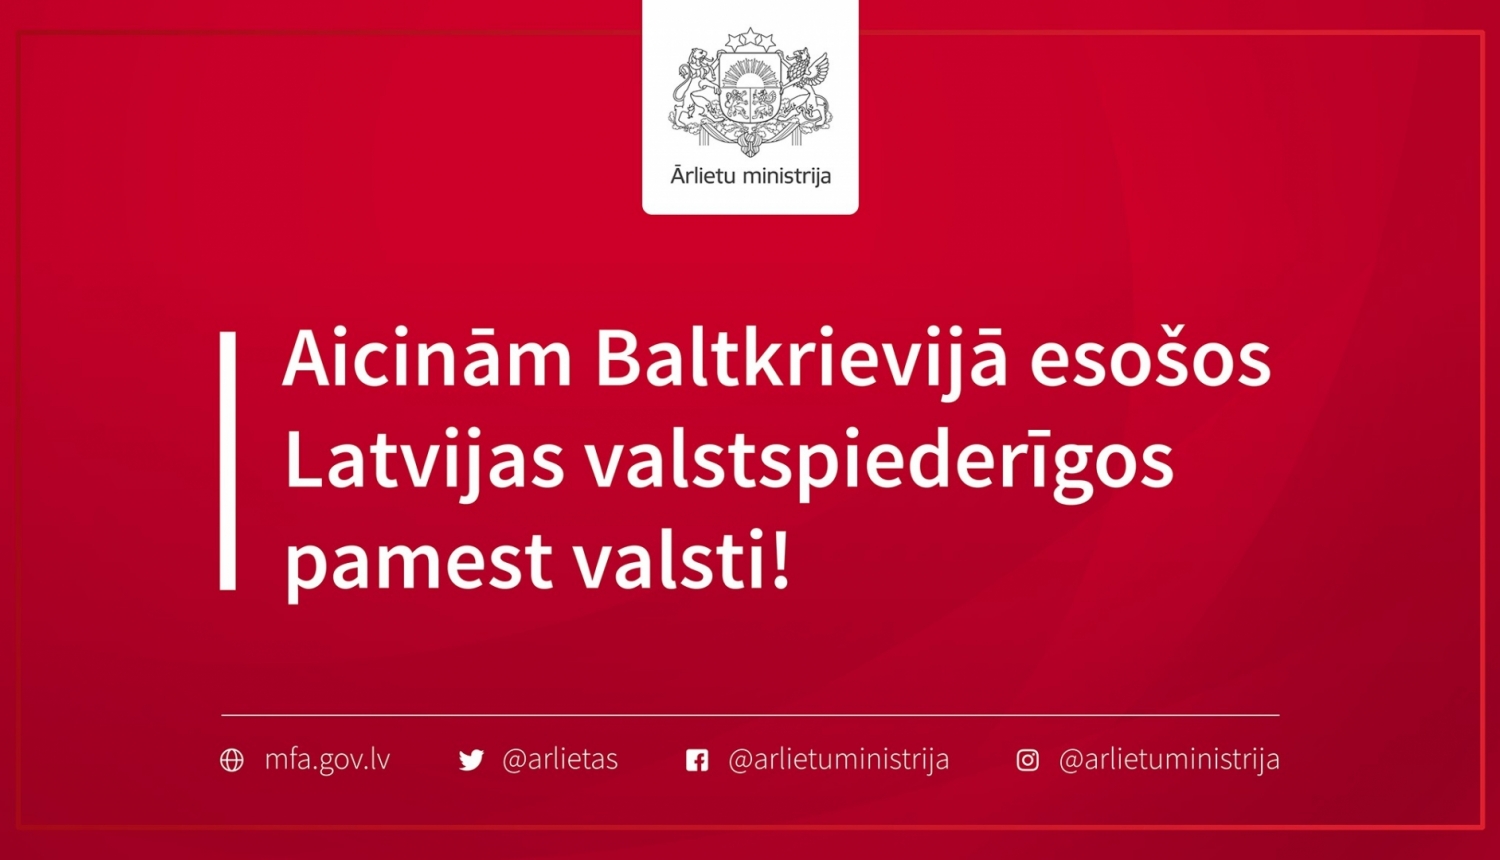 Aicinām Baltkrievijā esošos Latvijas valstspiederīgos pamest valsti!